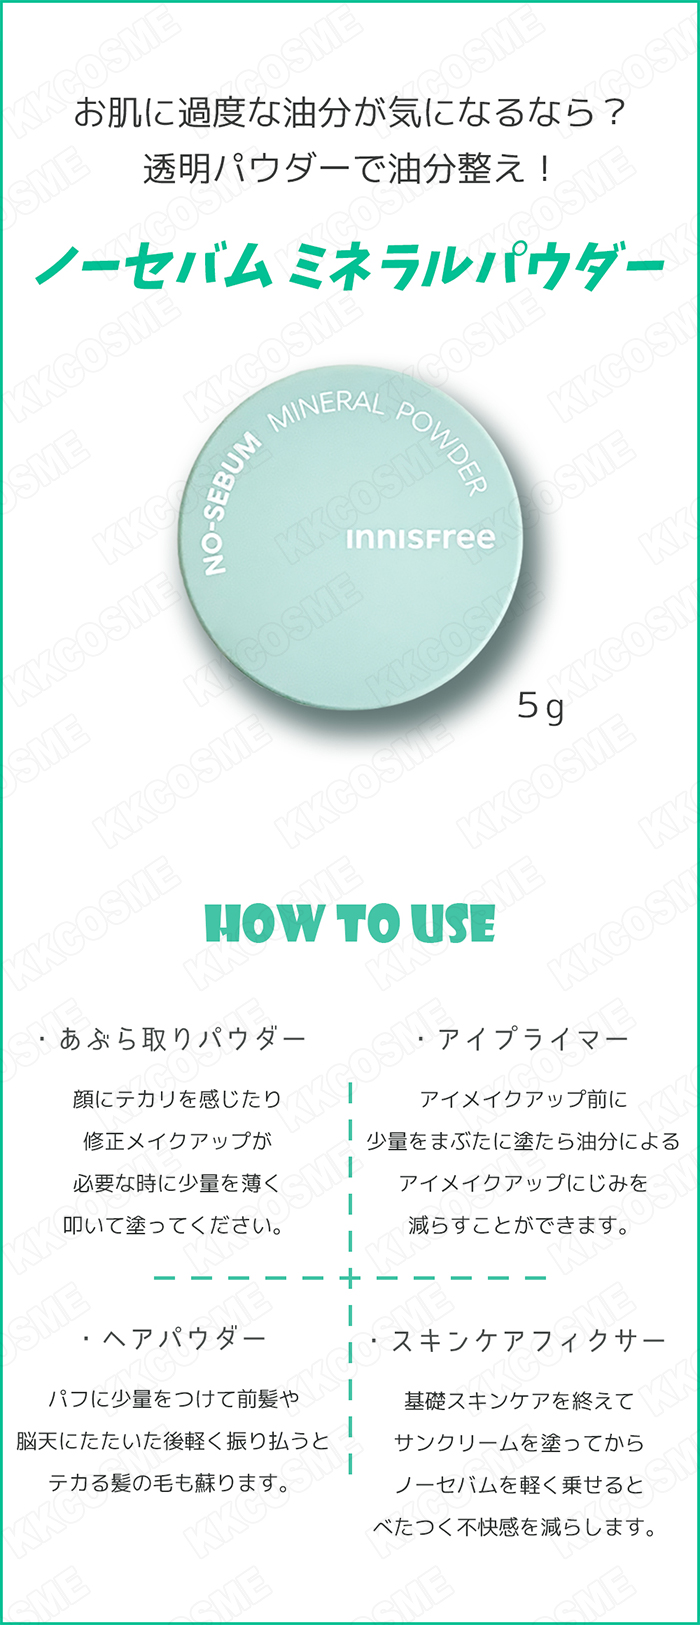  Япония доставка внутри страны innisfreei лак свободный no-sebam минерал пудра 5g одиночный товар стандартный товар Корея cosme 